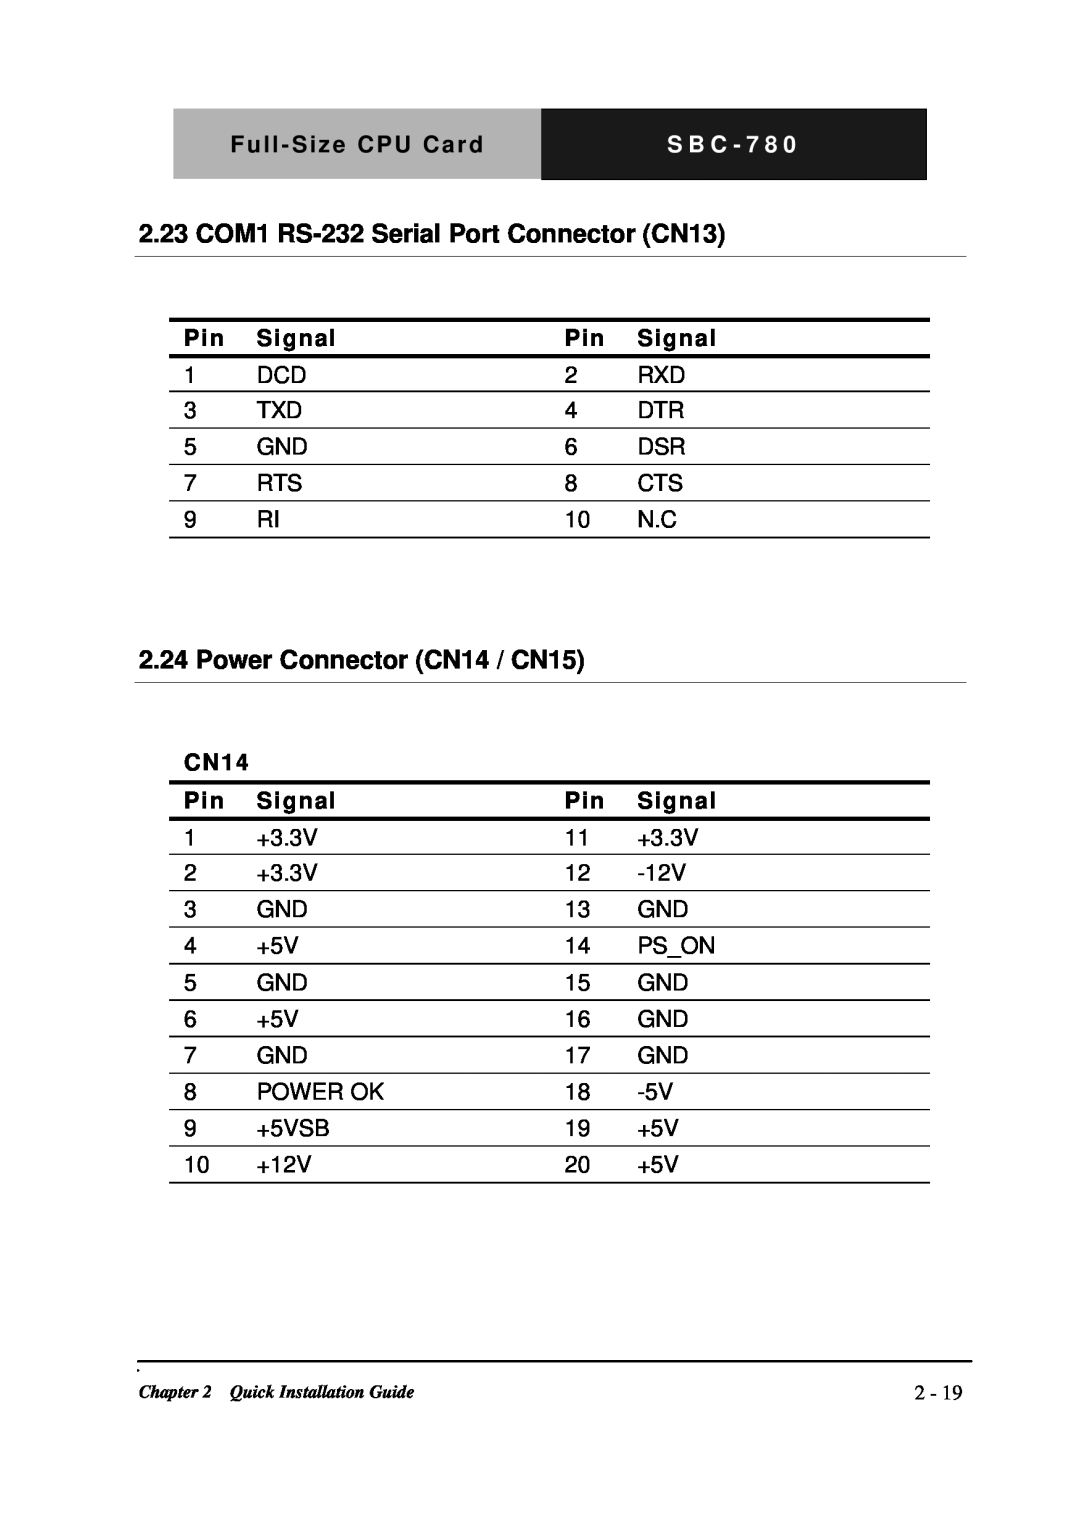 Intel SBC-780 manual 2.23 COM1 RS-232Serial Port Connector CN13, Power Connector CN14 / CN15, S B C - 7 8 